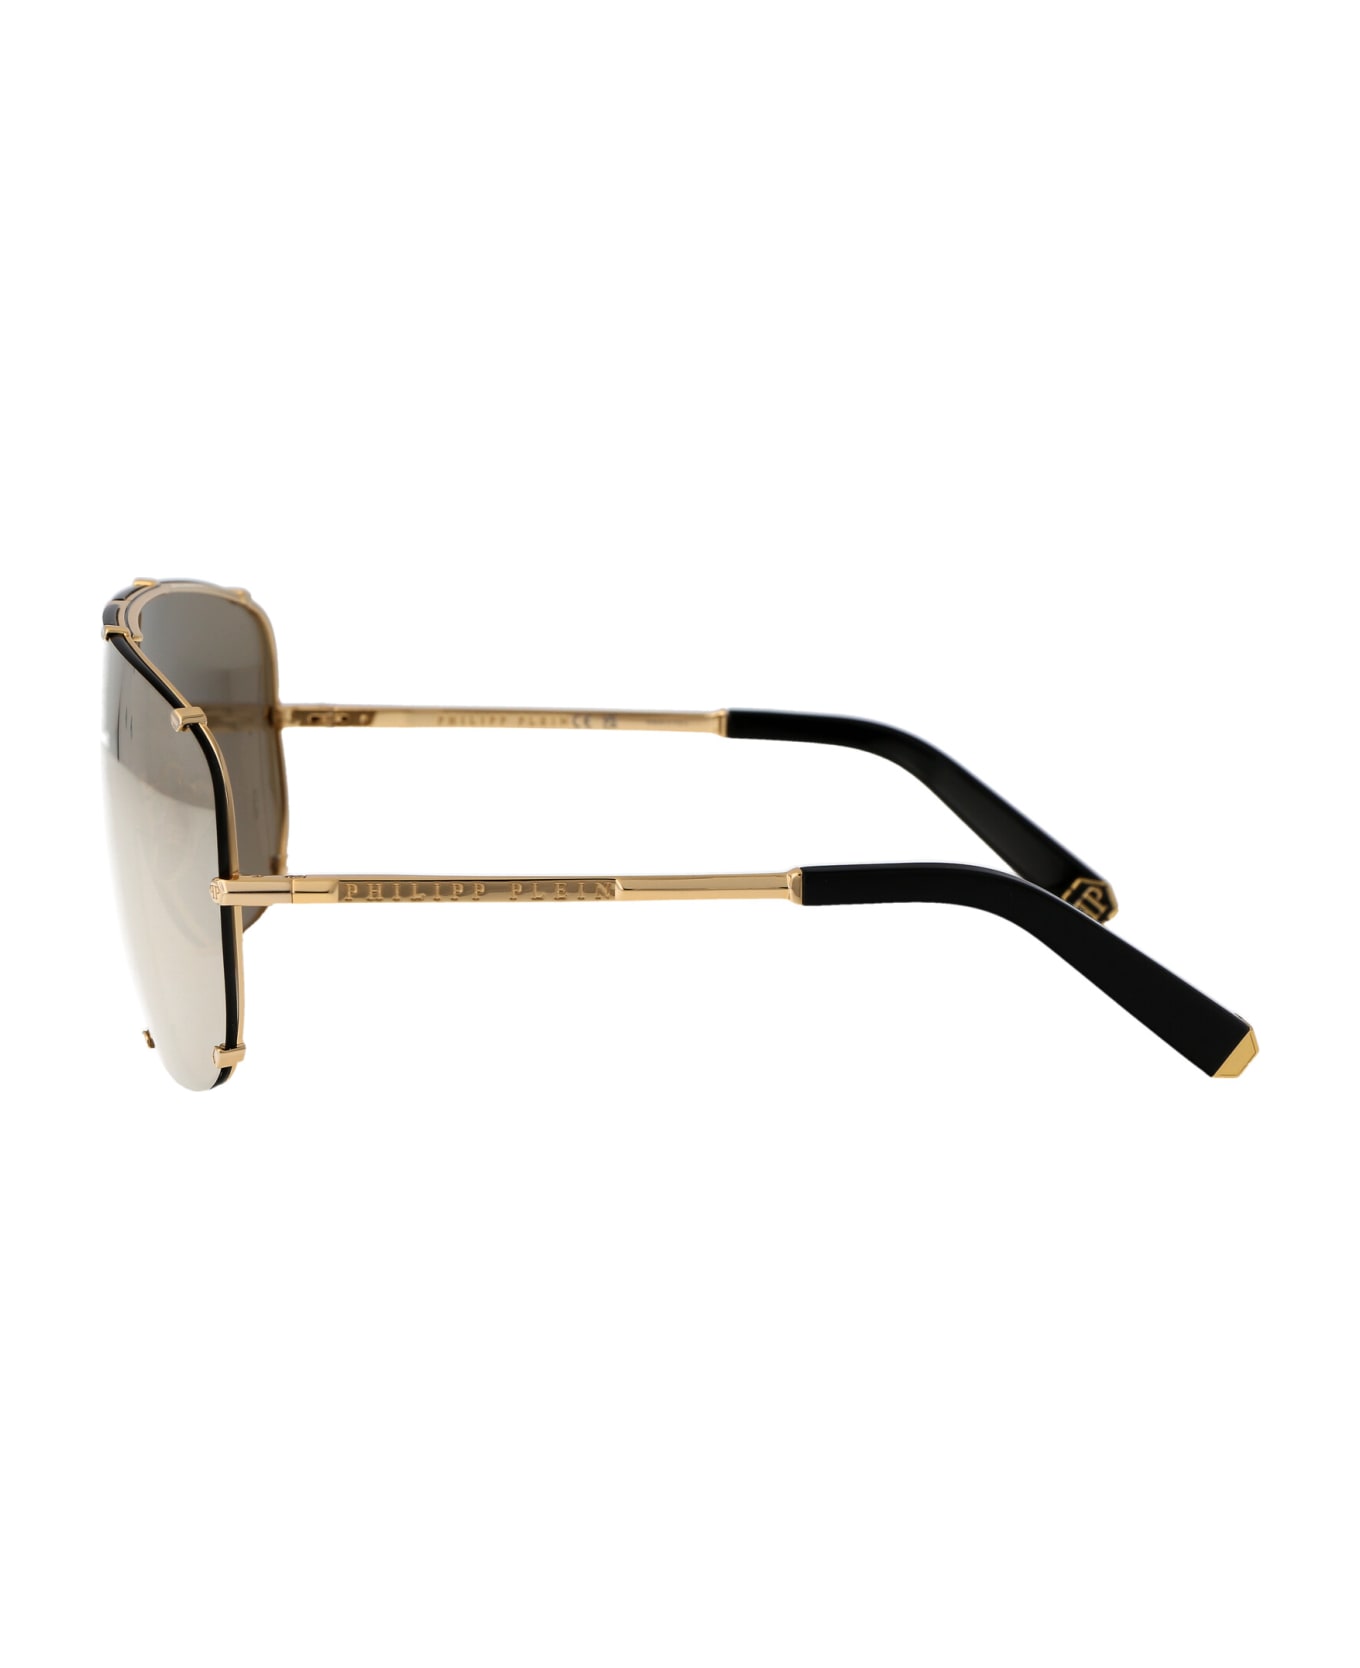 Philipp Plein Spp075m Sunglasses - 400G GOLD